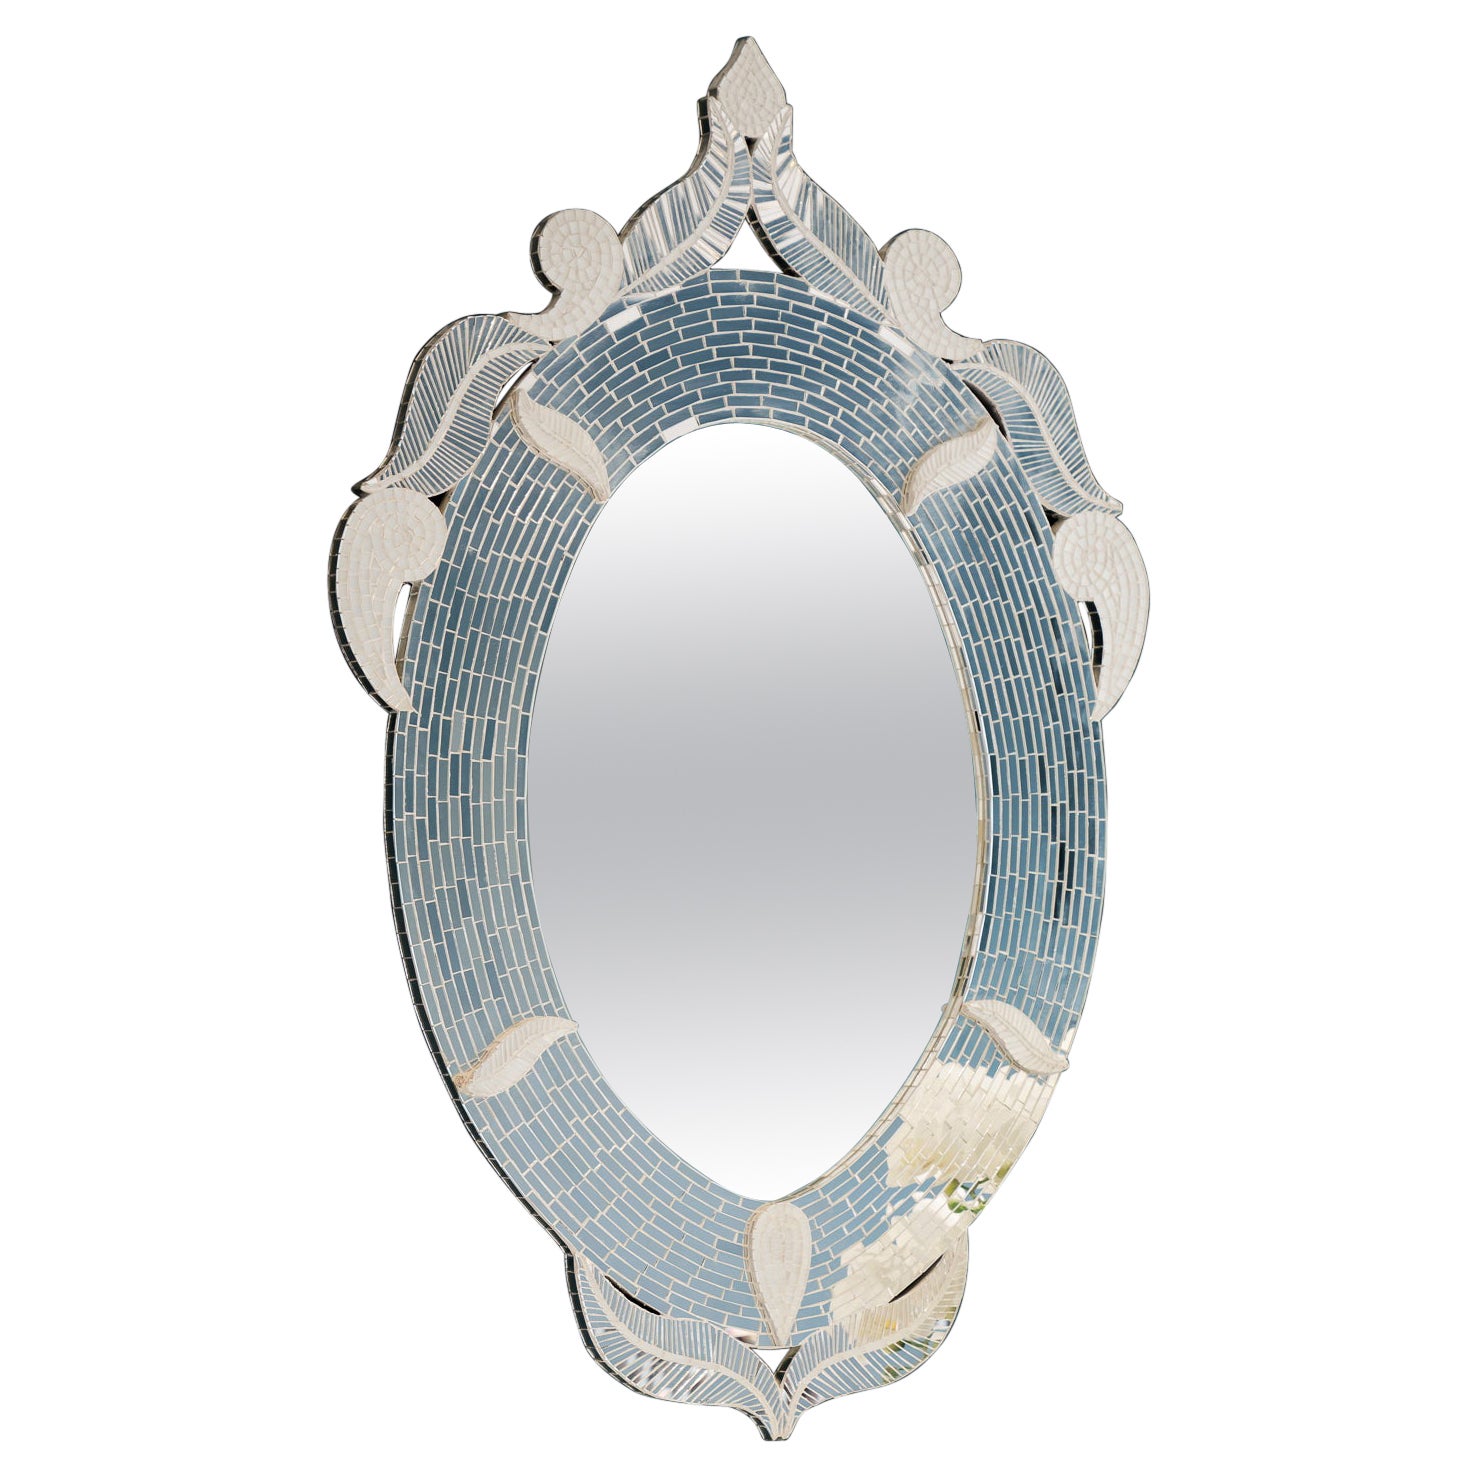 Palazzo Oval Mosaic Mirror, handgefertigt in Großbritannien von Claire Nayman